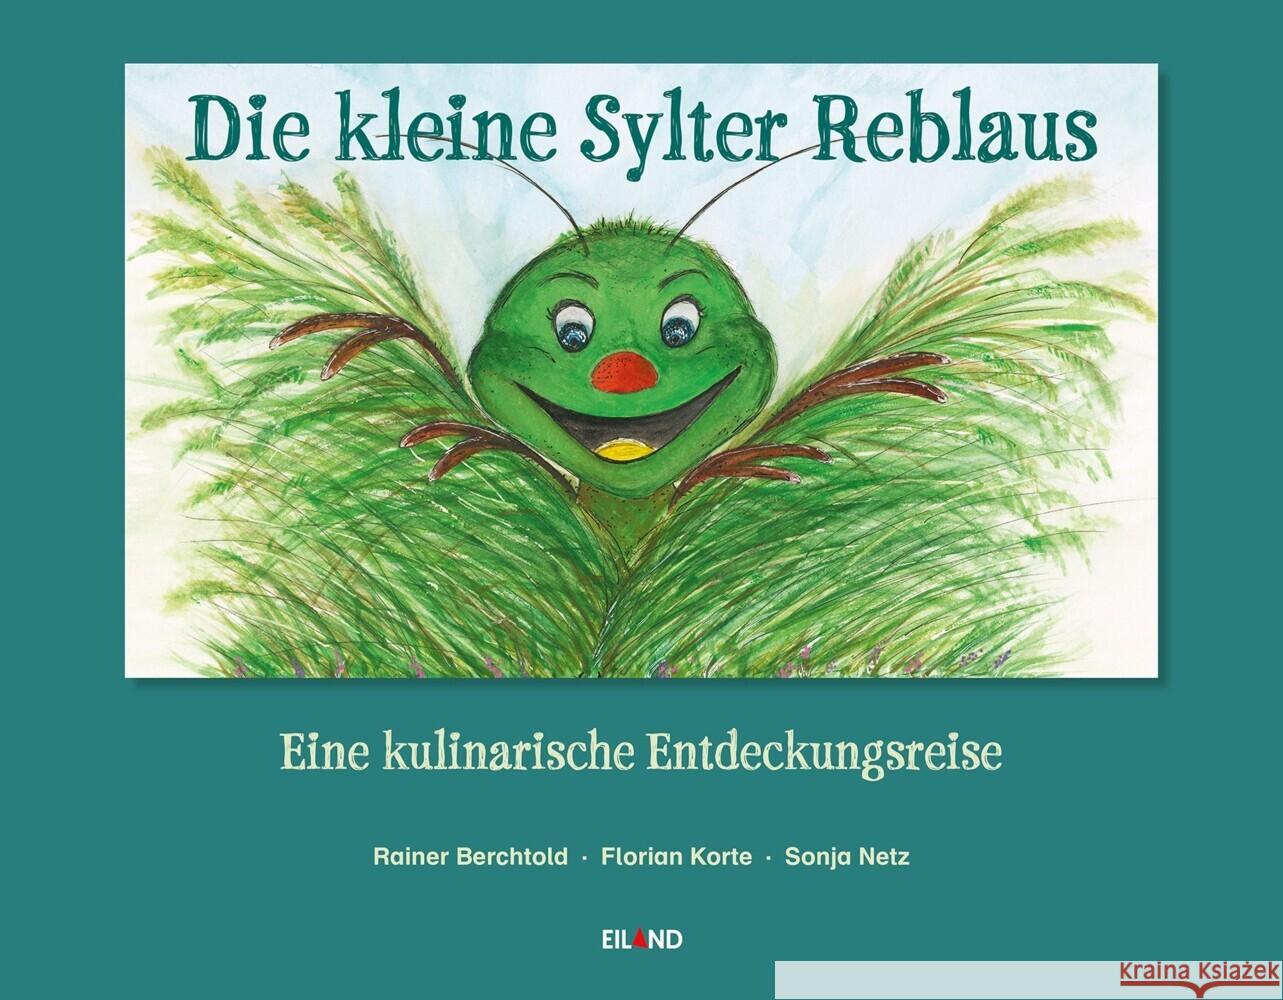 Die kleine Sylter Reblaus Korte, Florian 9783869265674 Eiland - książka